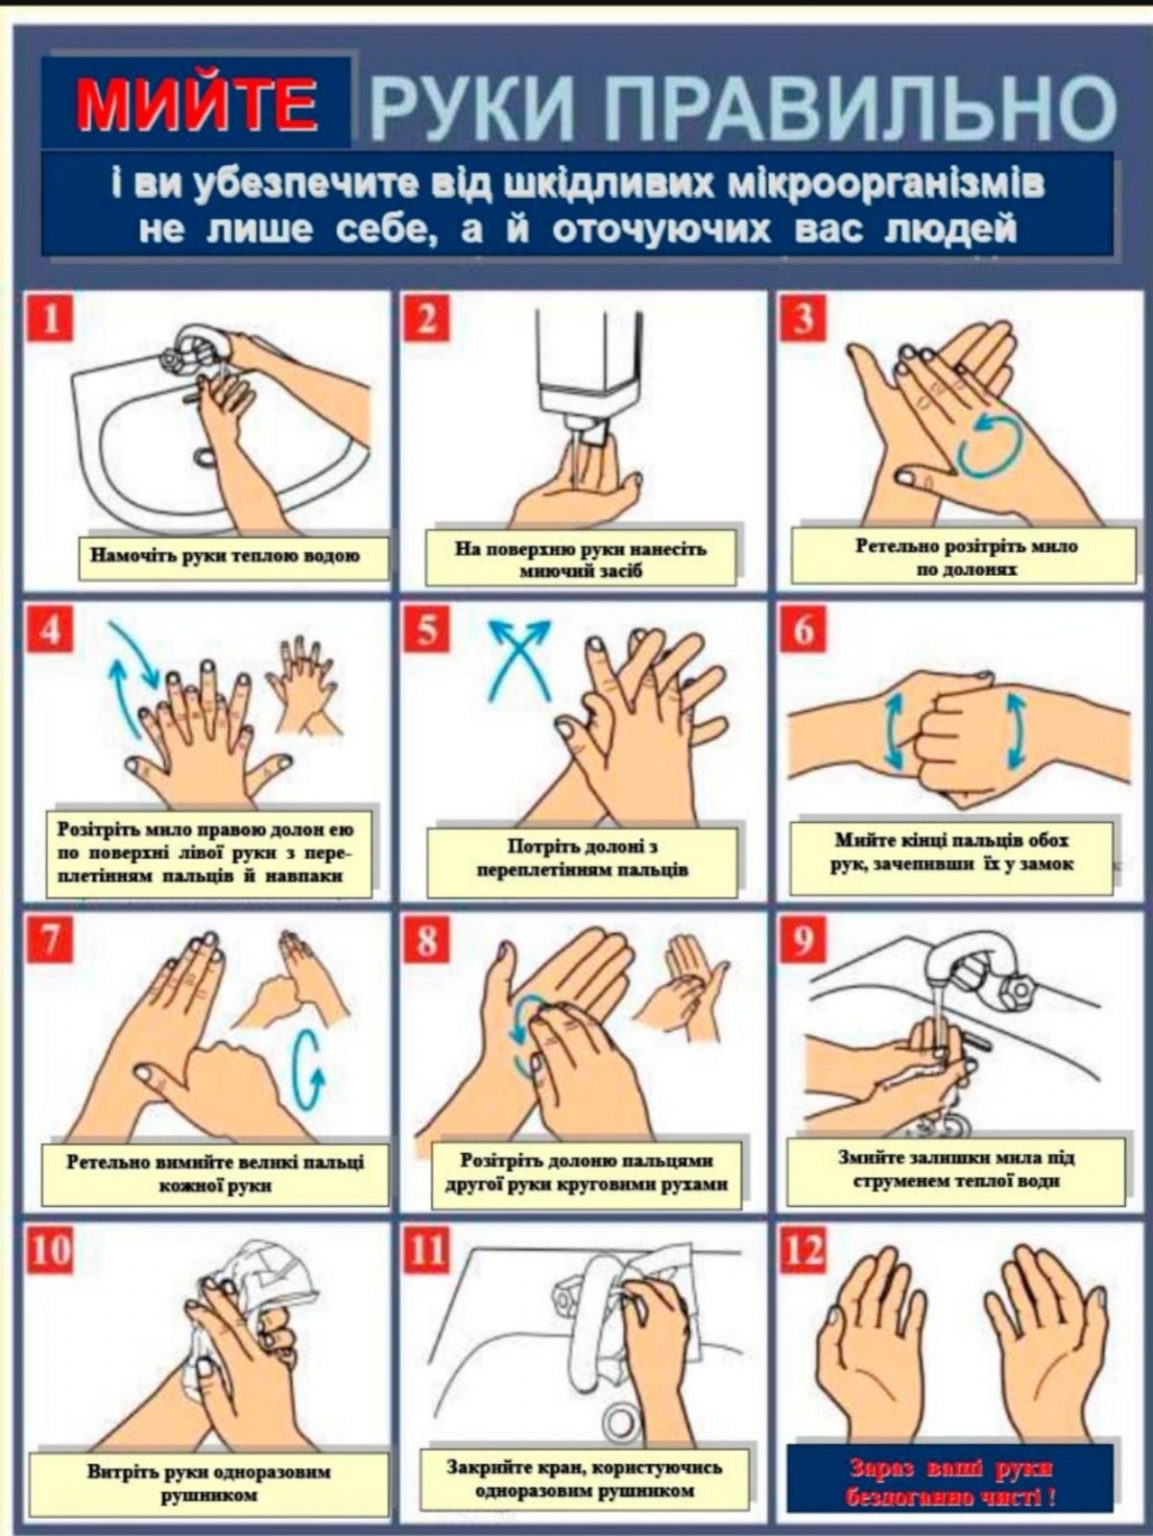 Температура воды при мытье рук. Гигиенический метод мытья рук алгоритм. Гигиеническая обработка рук медицинского персонала САНПИН 2022. Схема гигиенической обработки рук. Инструкция по мытью рук.